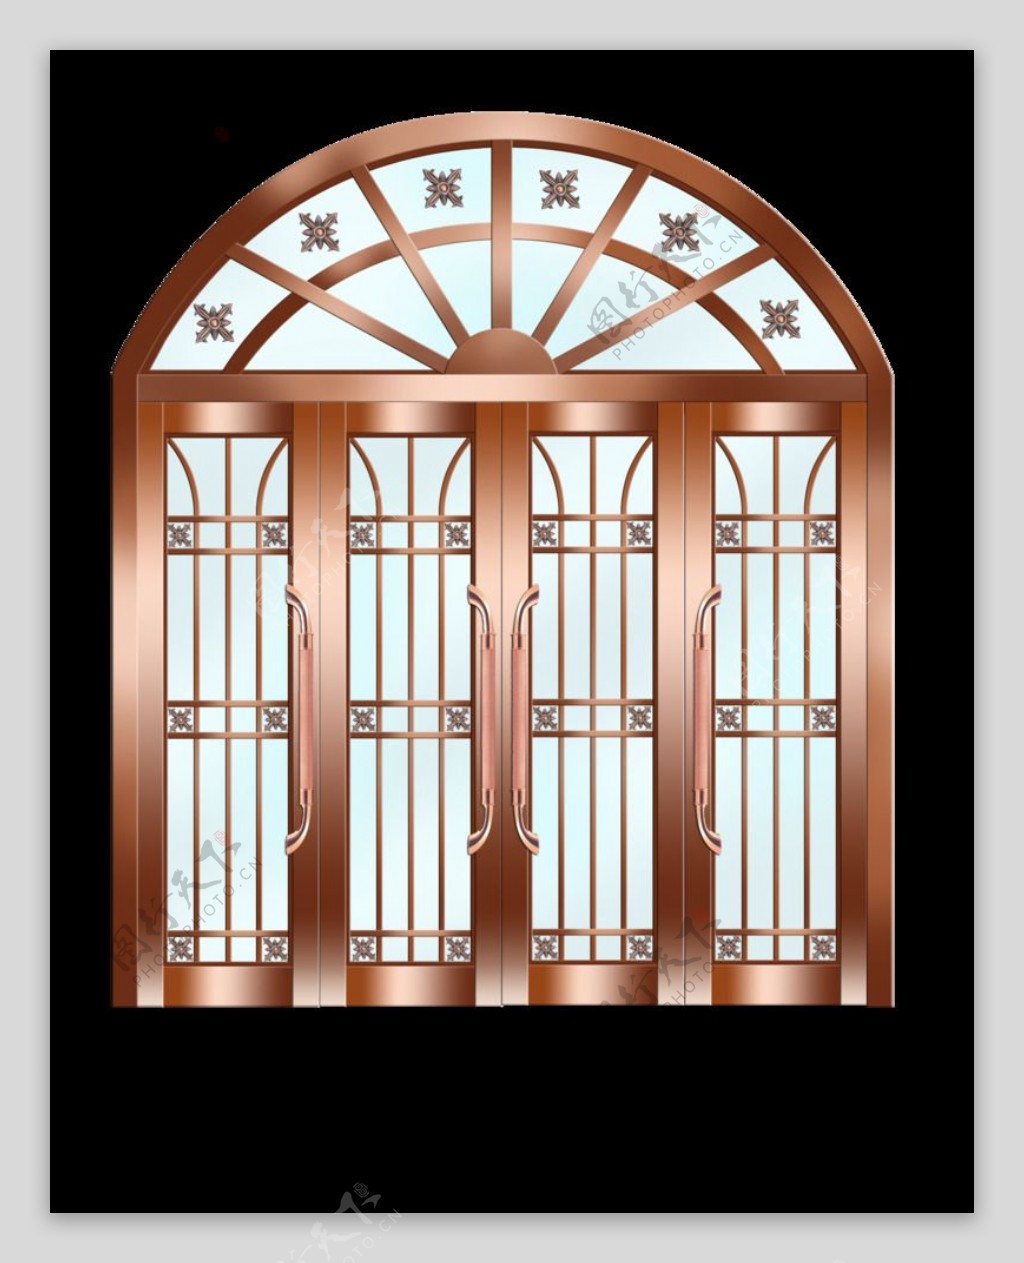 不锈钢金属铜门设计图片